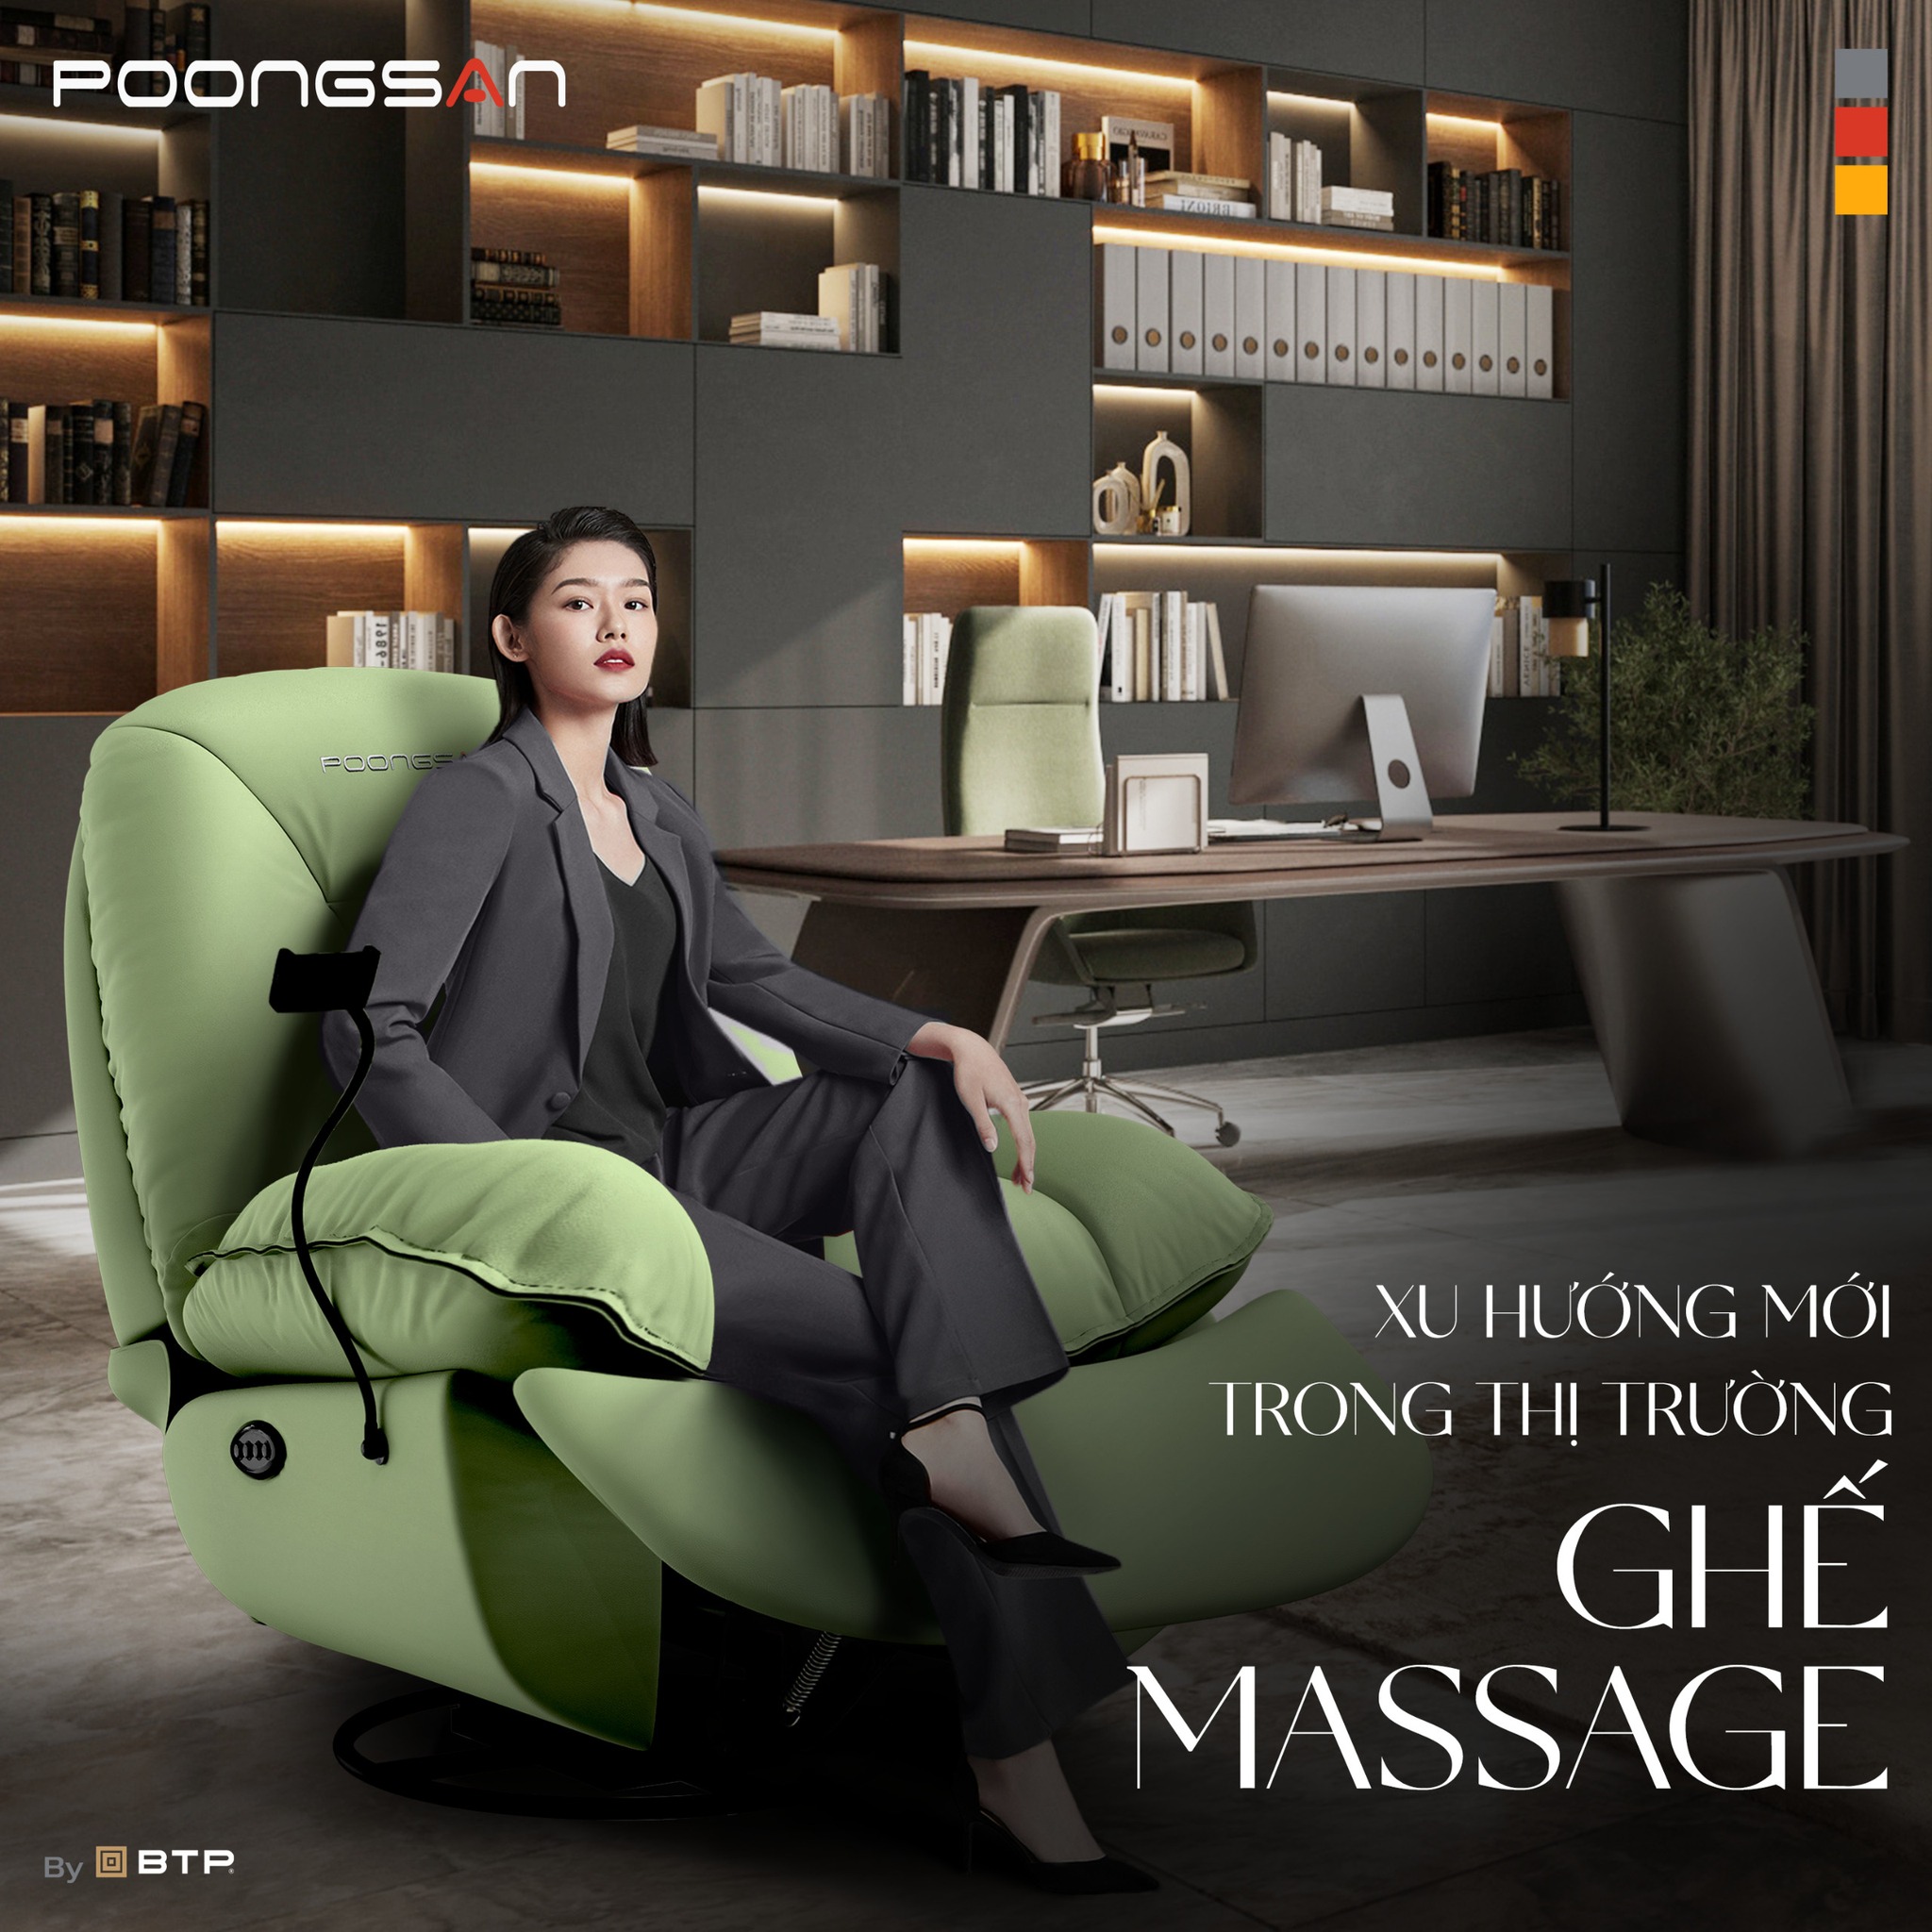 Đang tạo ra xu hướng mới cho thị trường ghế massage 